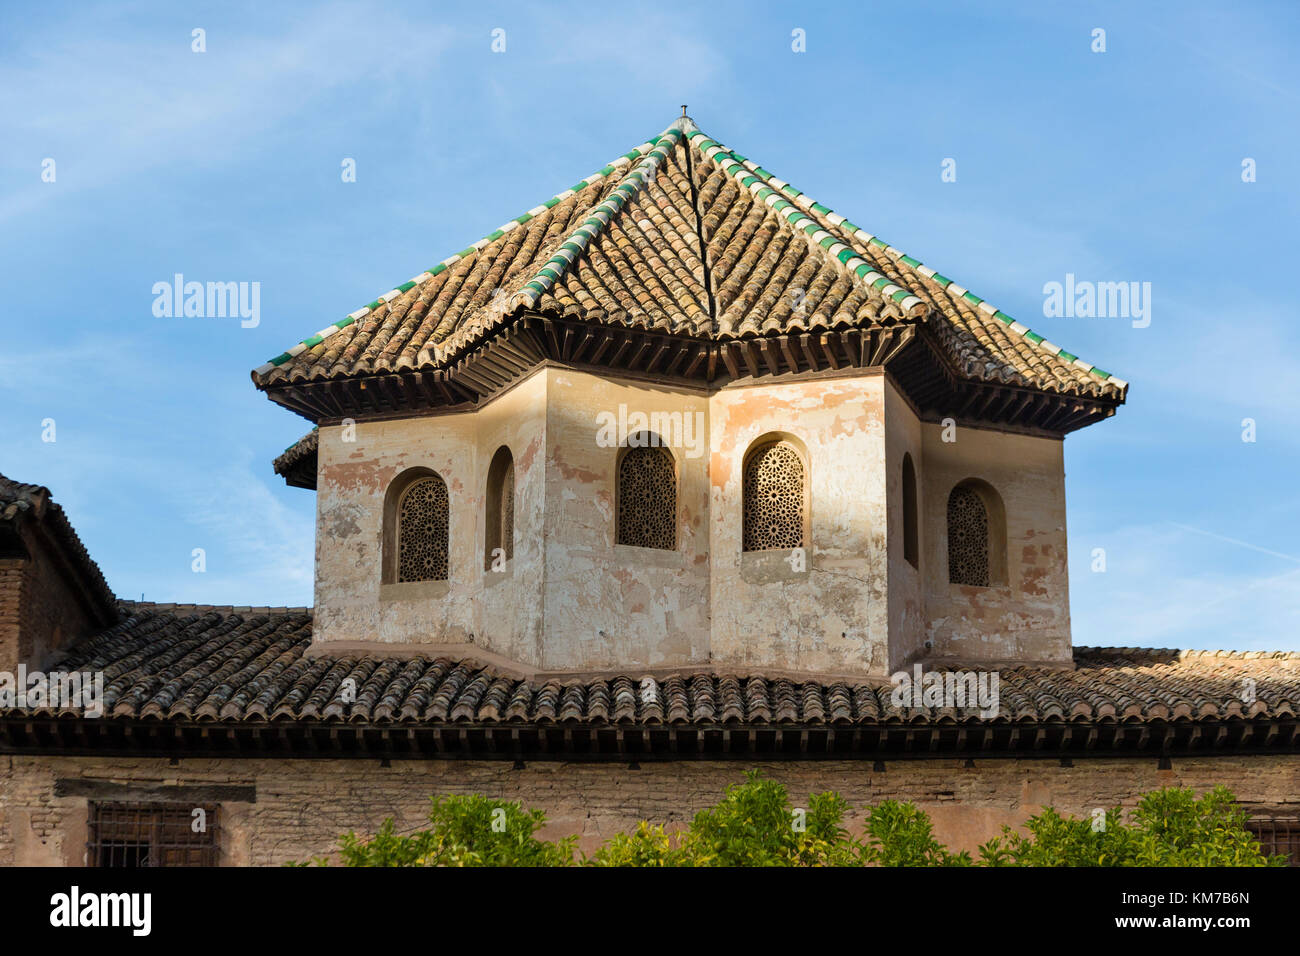 Dach von Gebäude an der Alhambra, Granada, Spanien Stockfoto